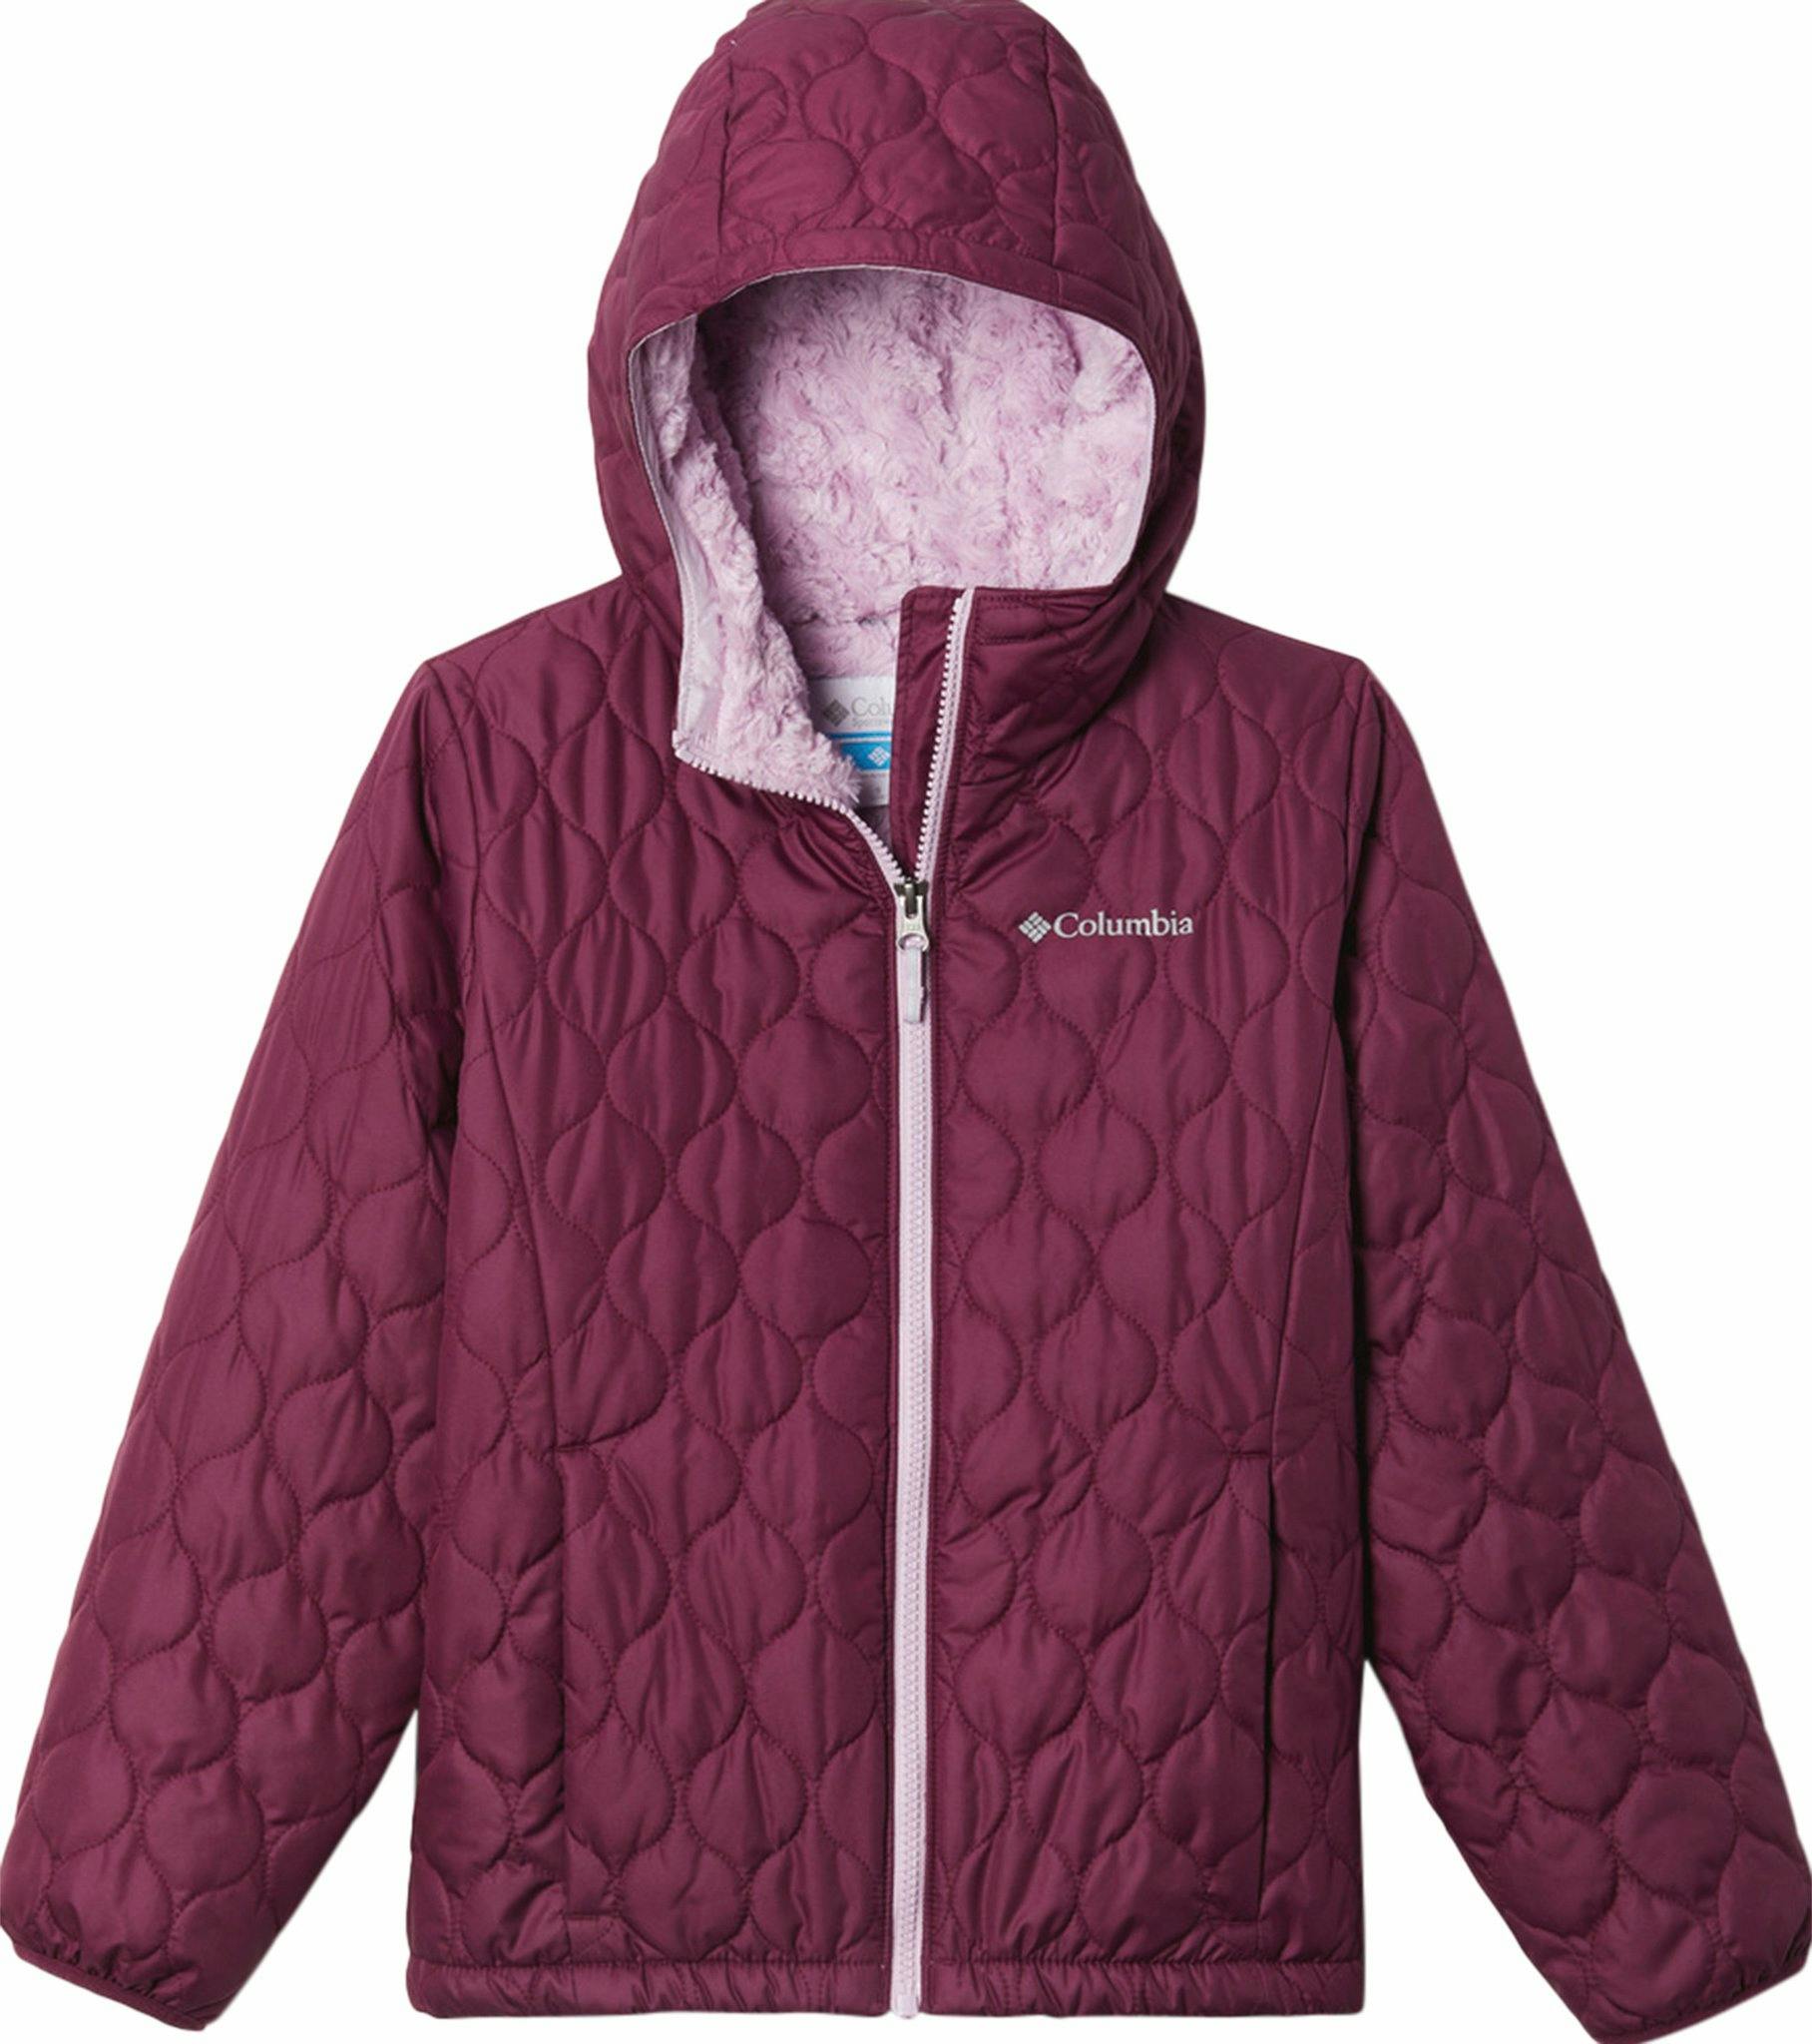 Product image for Bella Plush Jacket - Girls